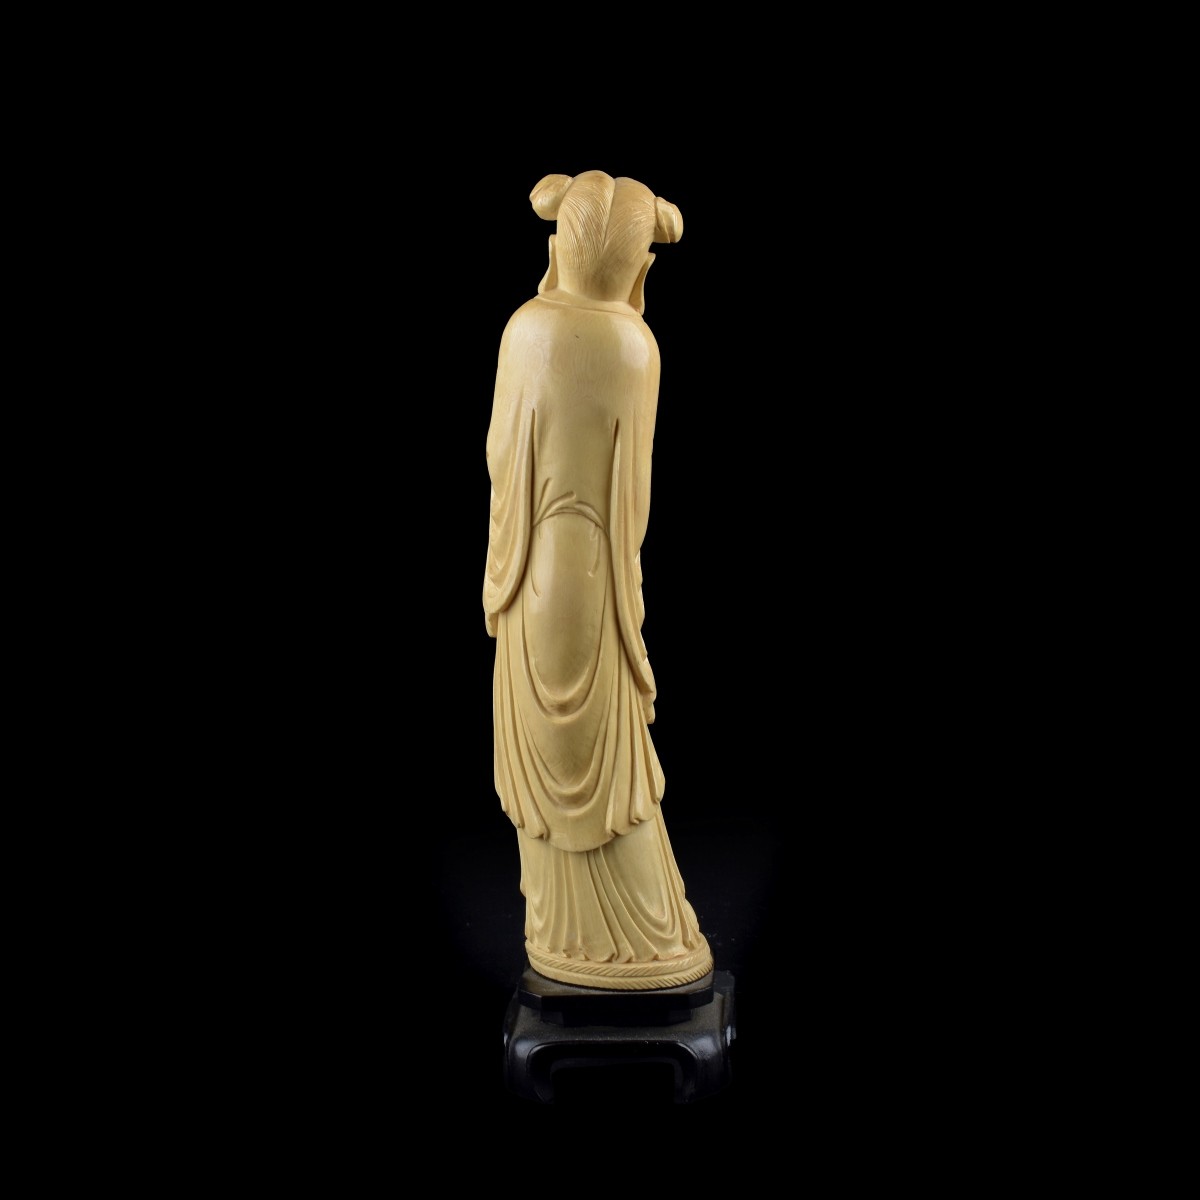 Chinese Figurine